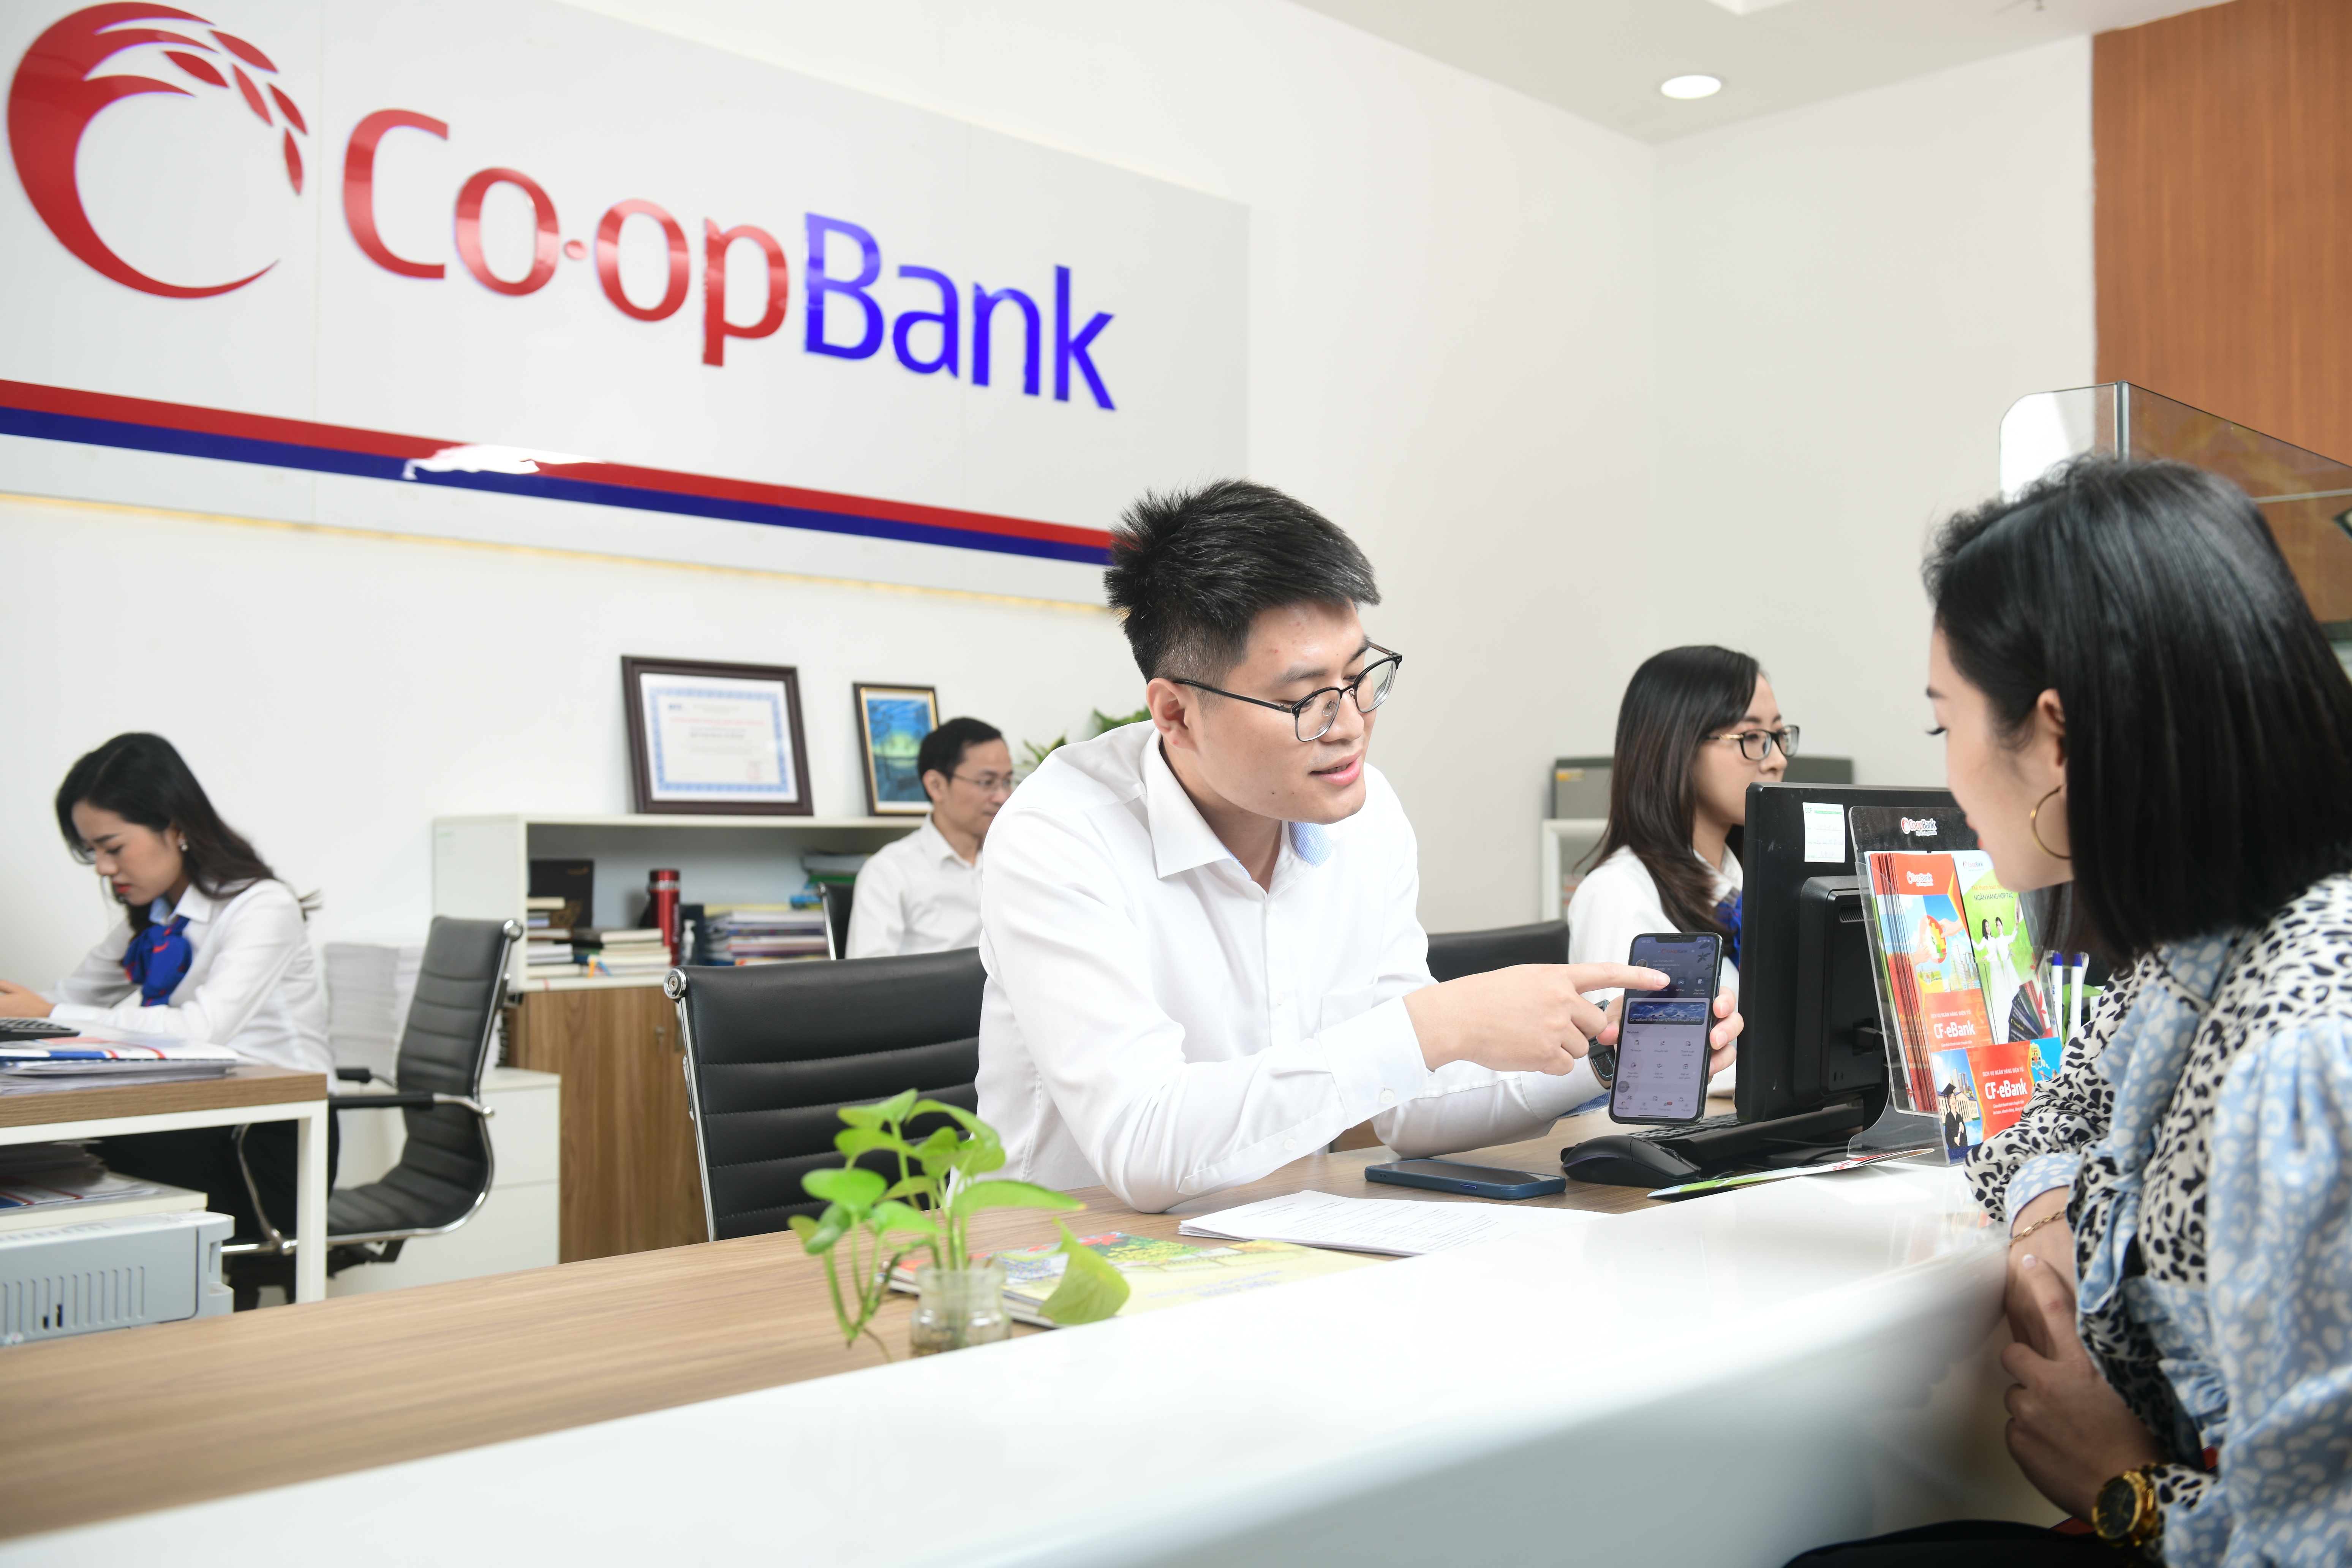 co opbank mobile banking gui tron yeu thuong